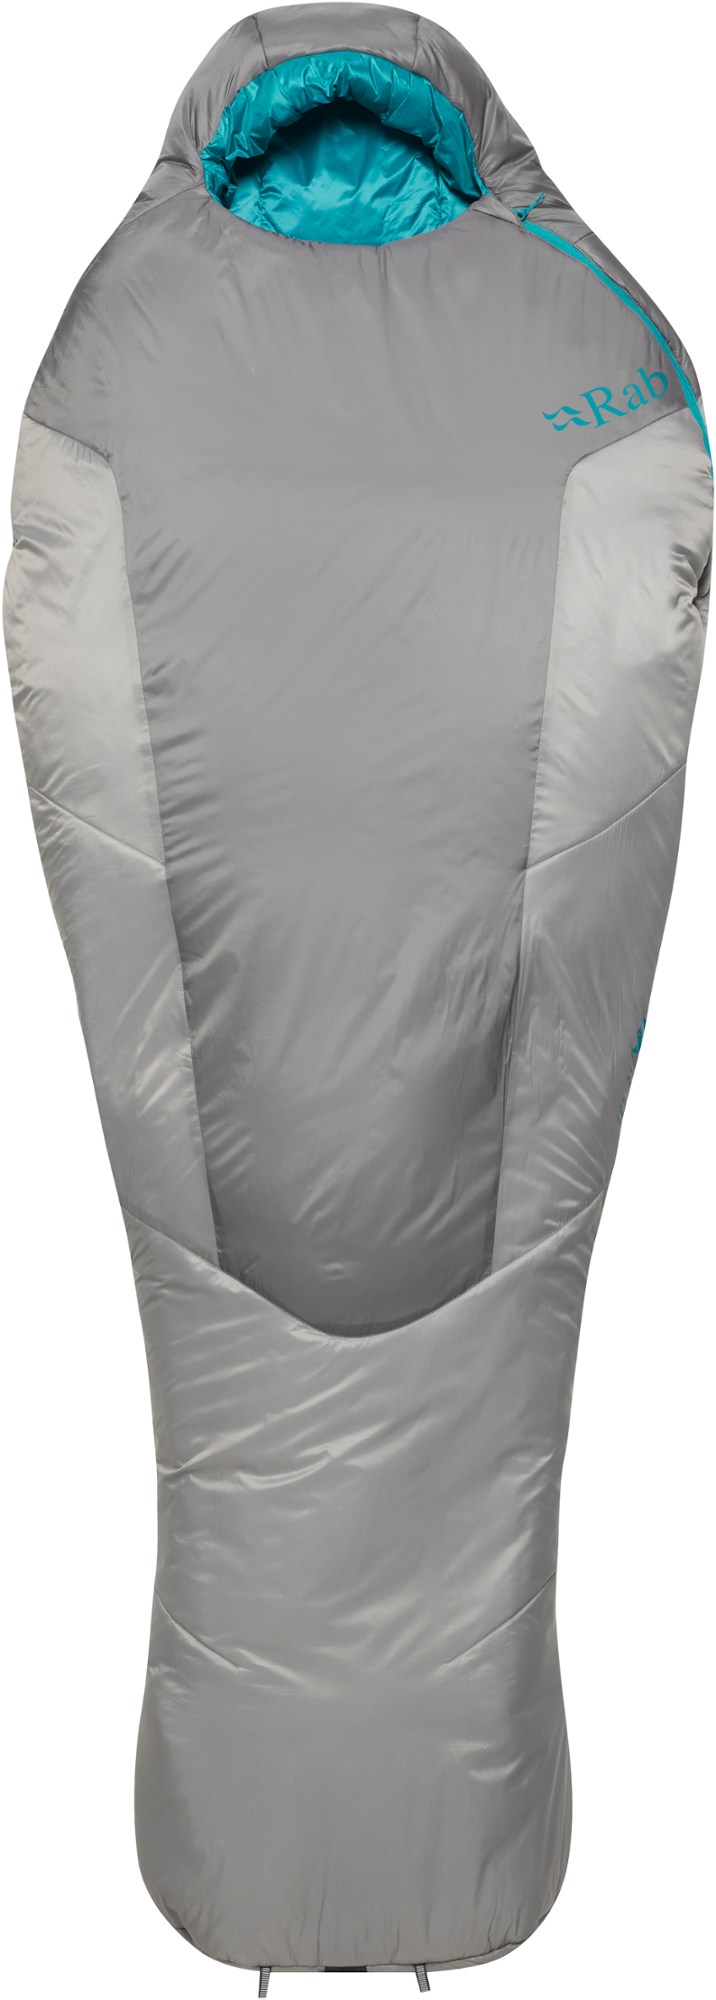 Спальный мешок Solar Ultra 2 — женский Rab, серый